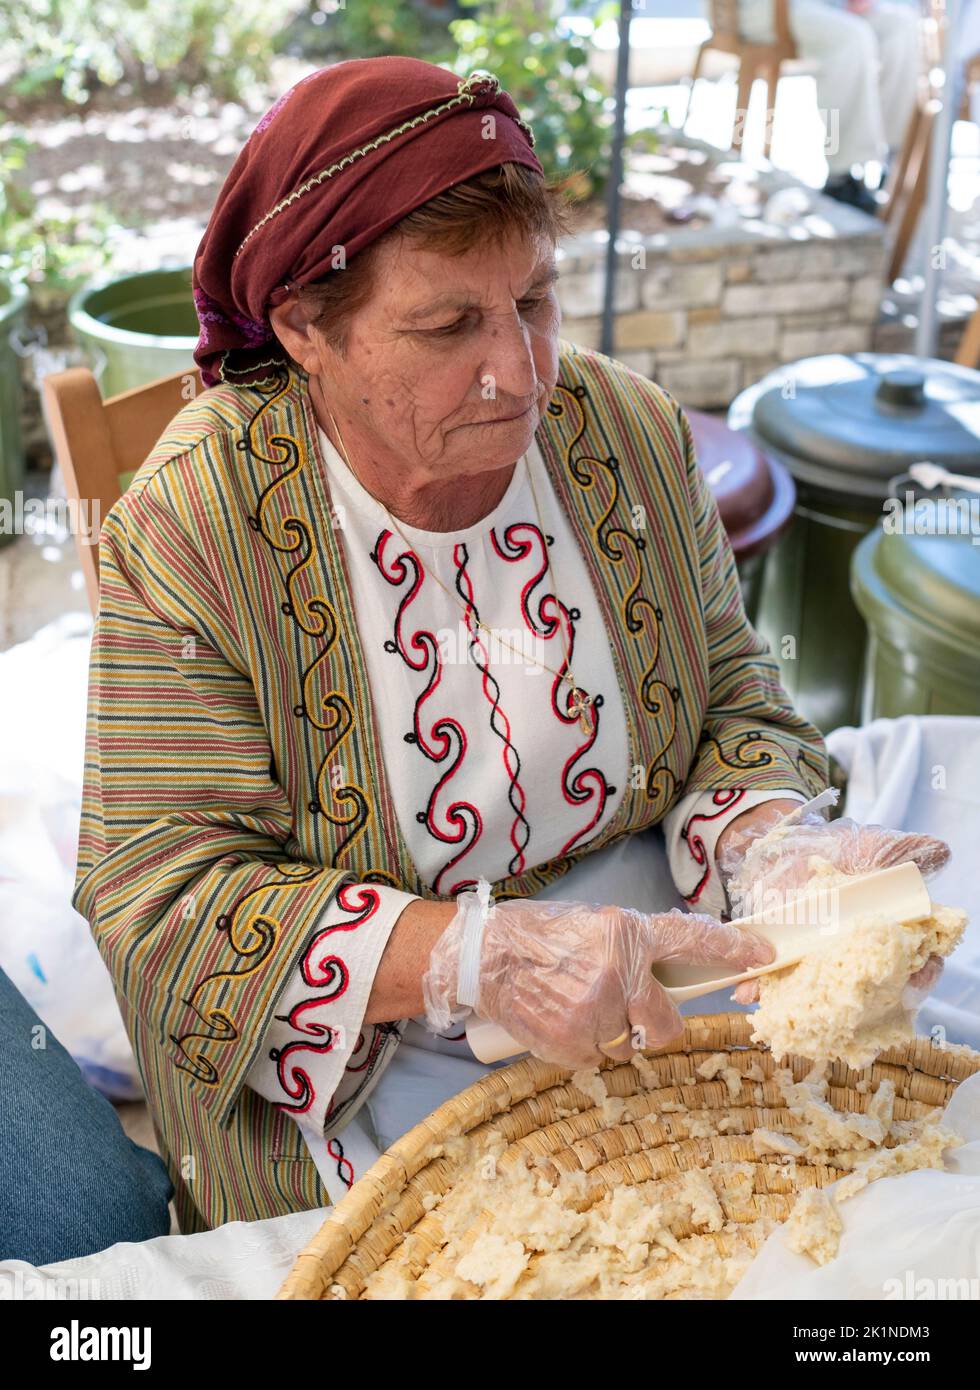 Les femmes chypriotes en tenue traditionnelle au festival rural Statos-Ayios Fotios, République de Chypre Banque D'Images